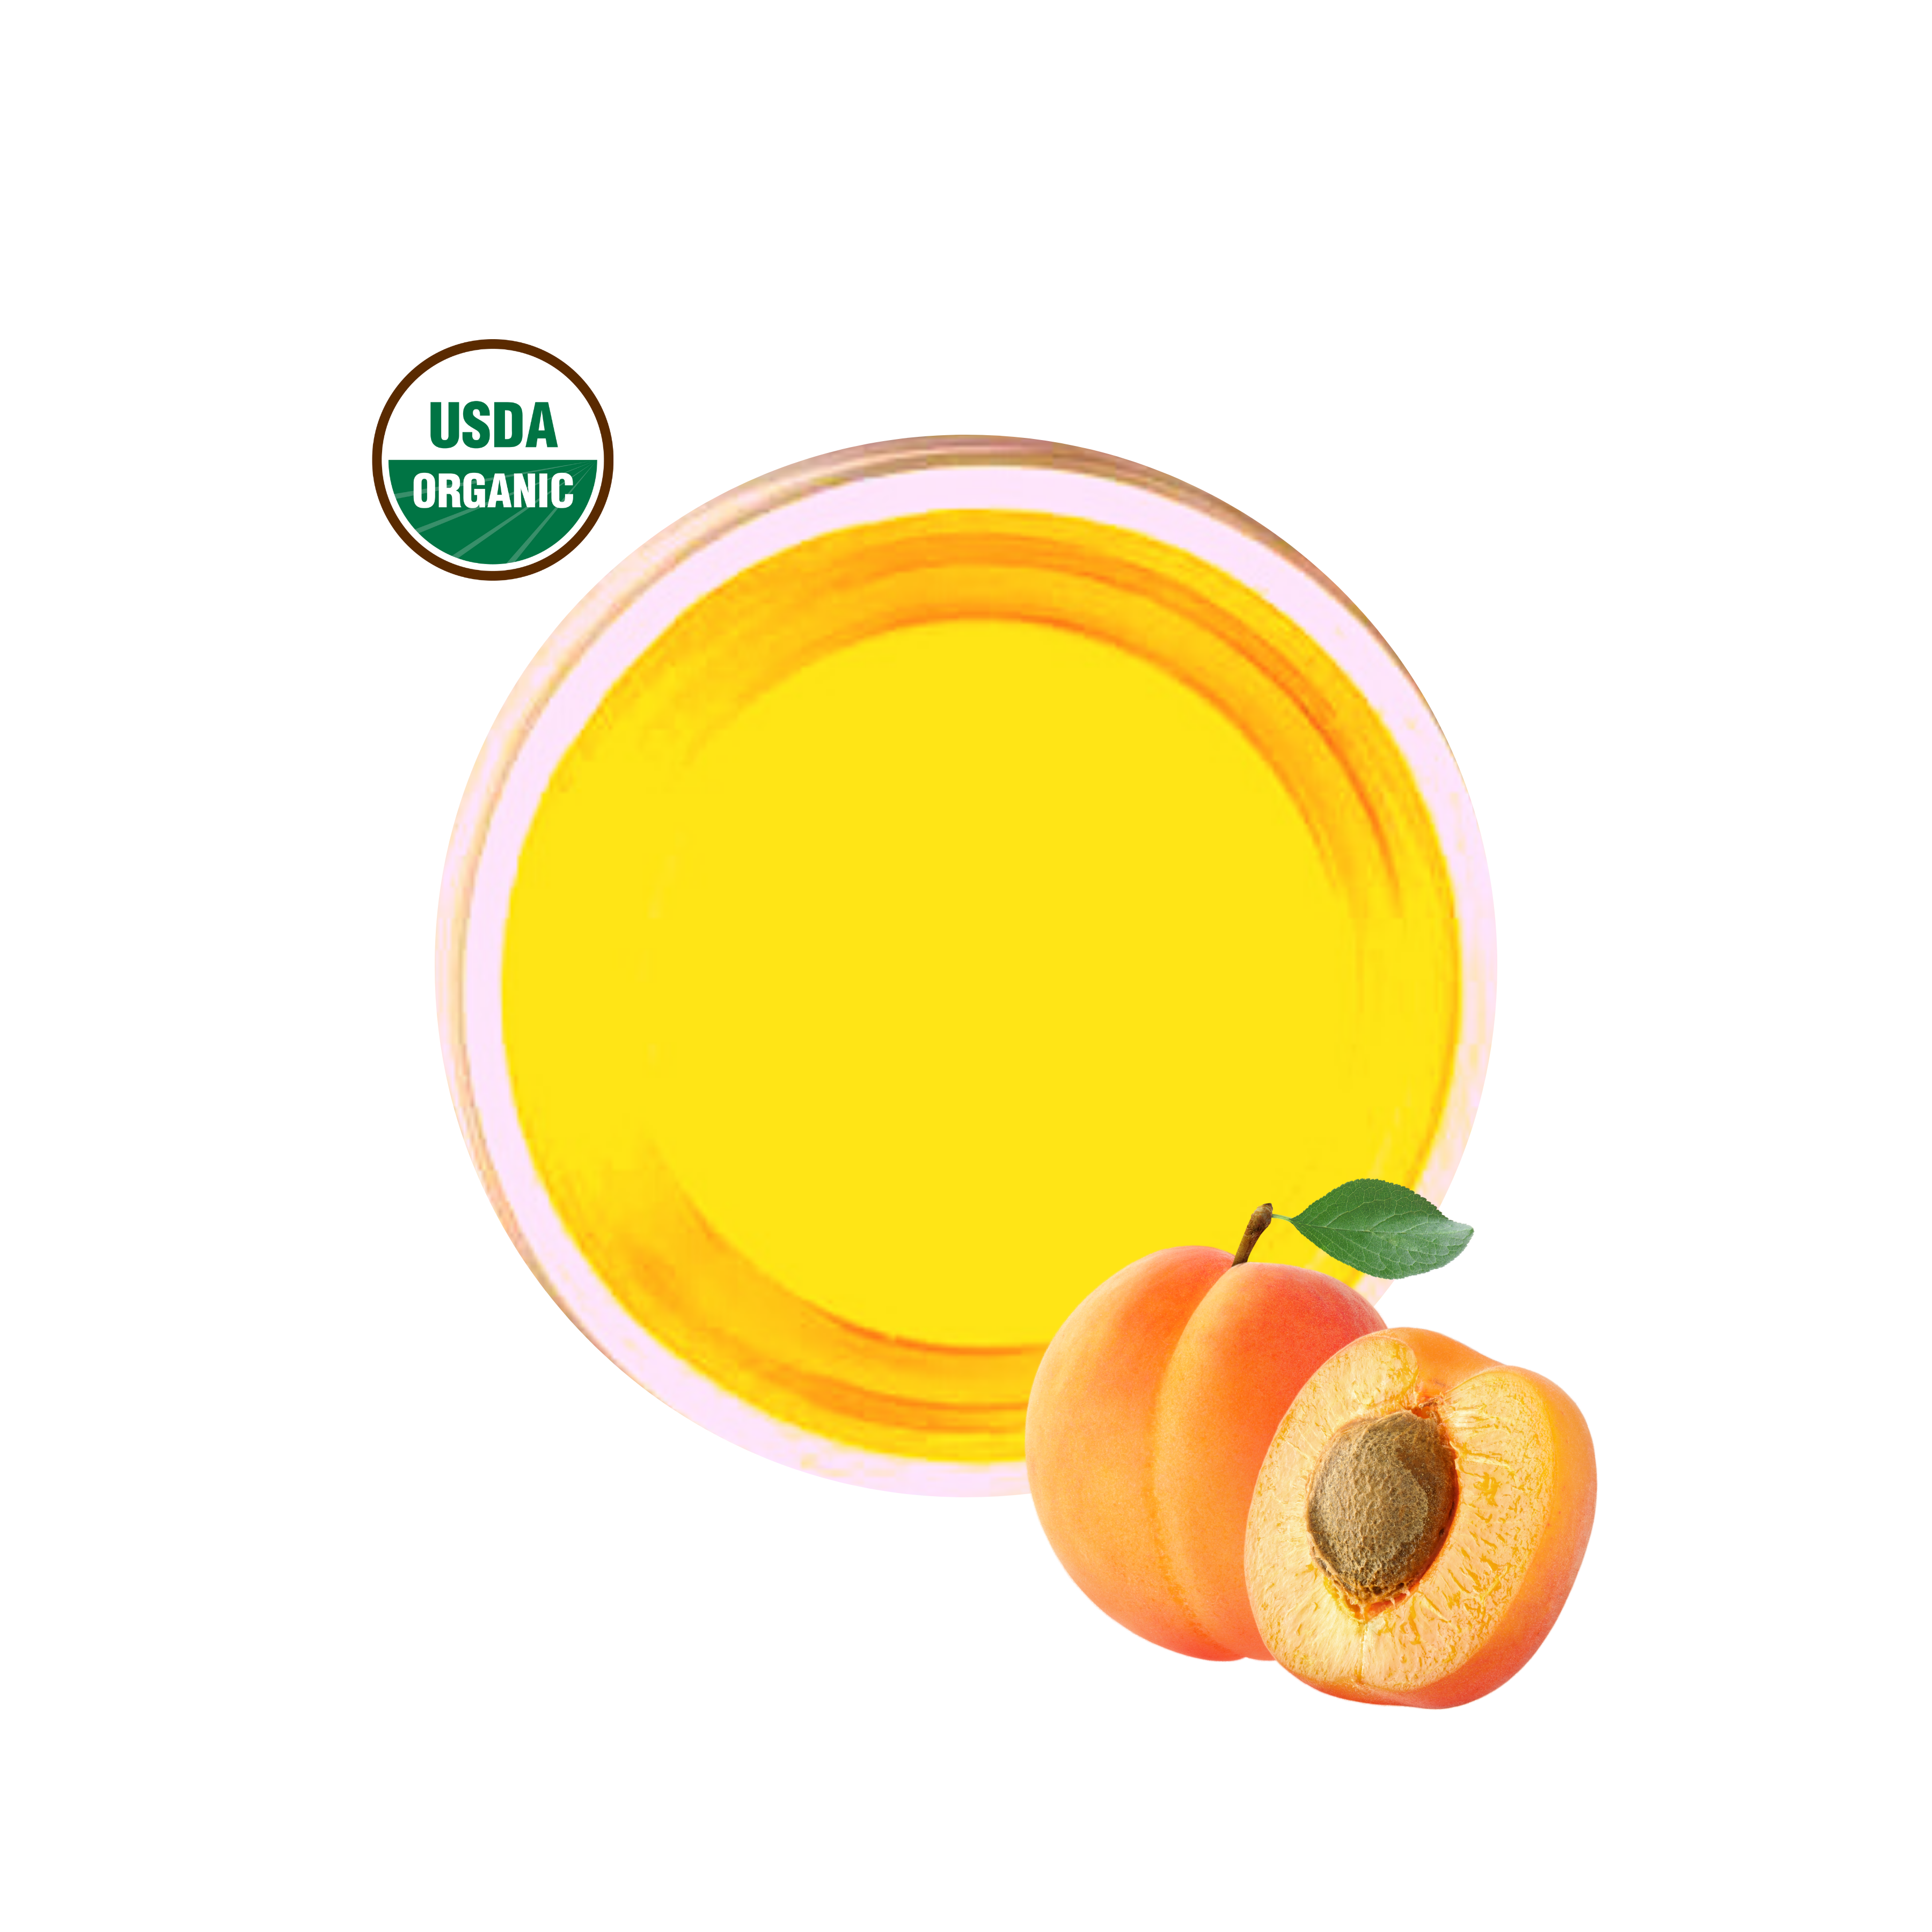 Apricot Kernel Oil Supplier  Apricot Seed Oil - Kosher, Non-GMO